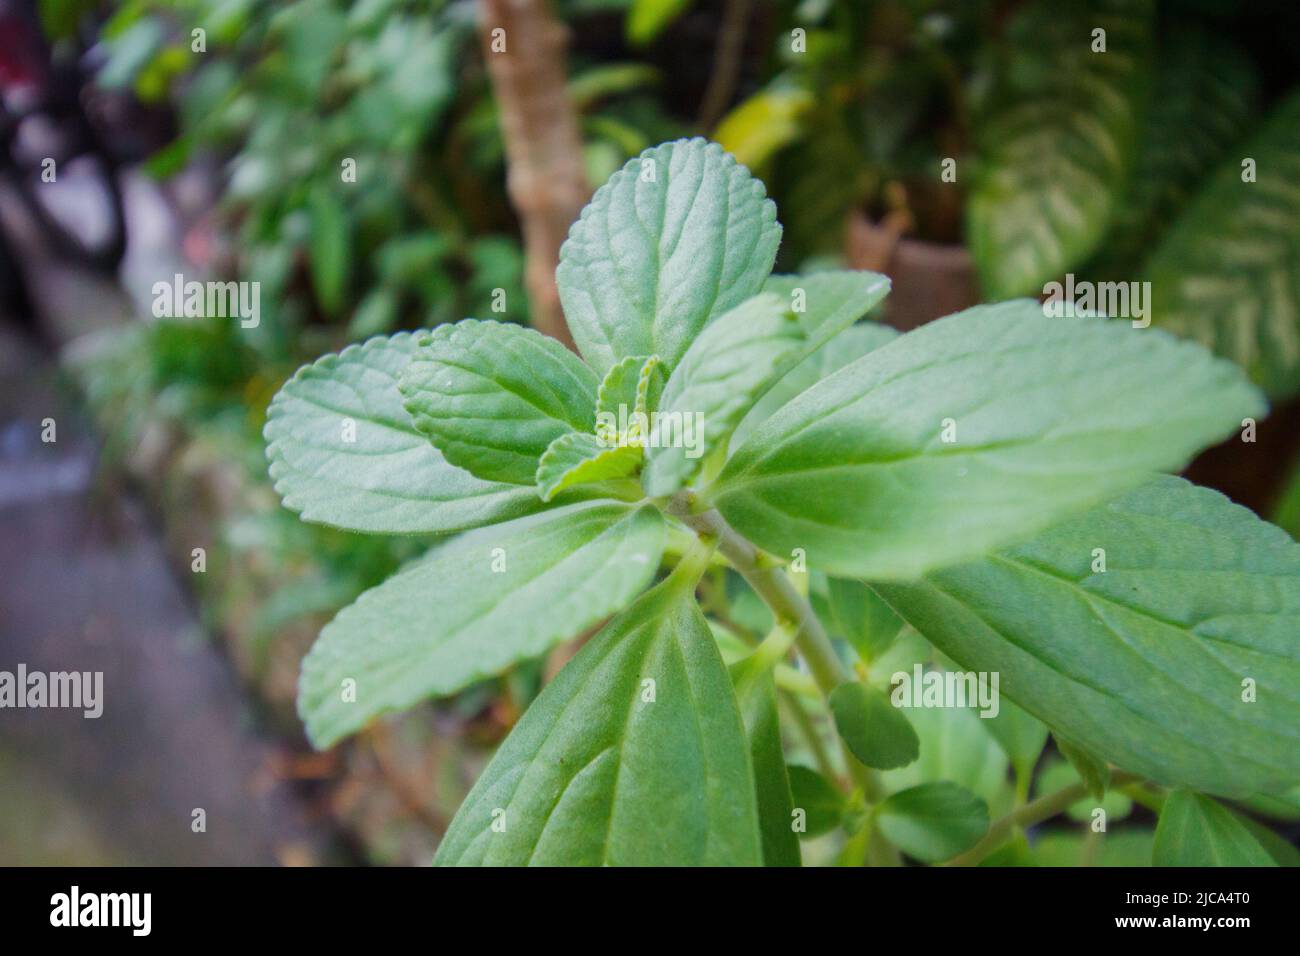 boldo leaves in a garden in Rio de Janeiro. Stock Photo